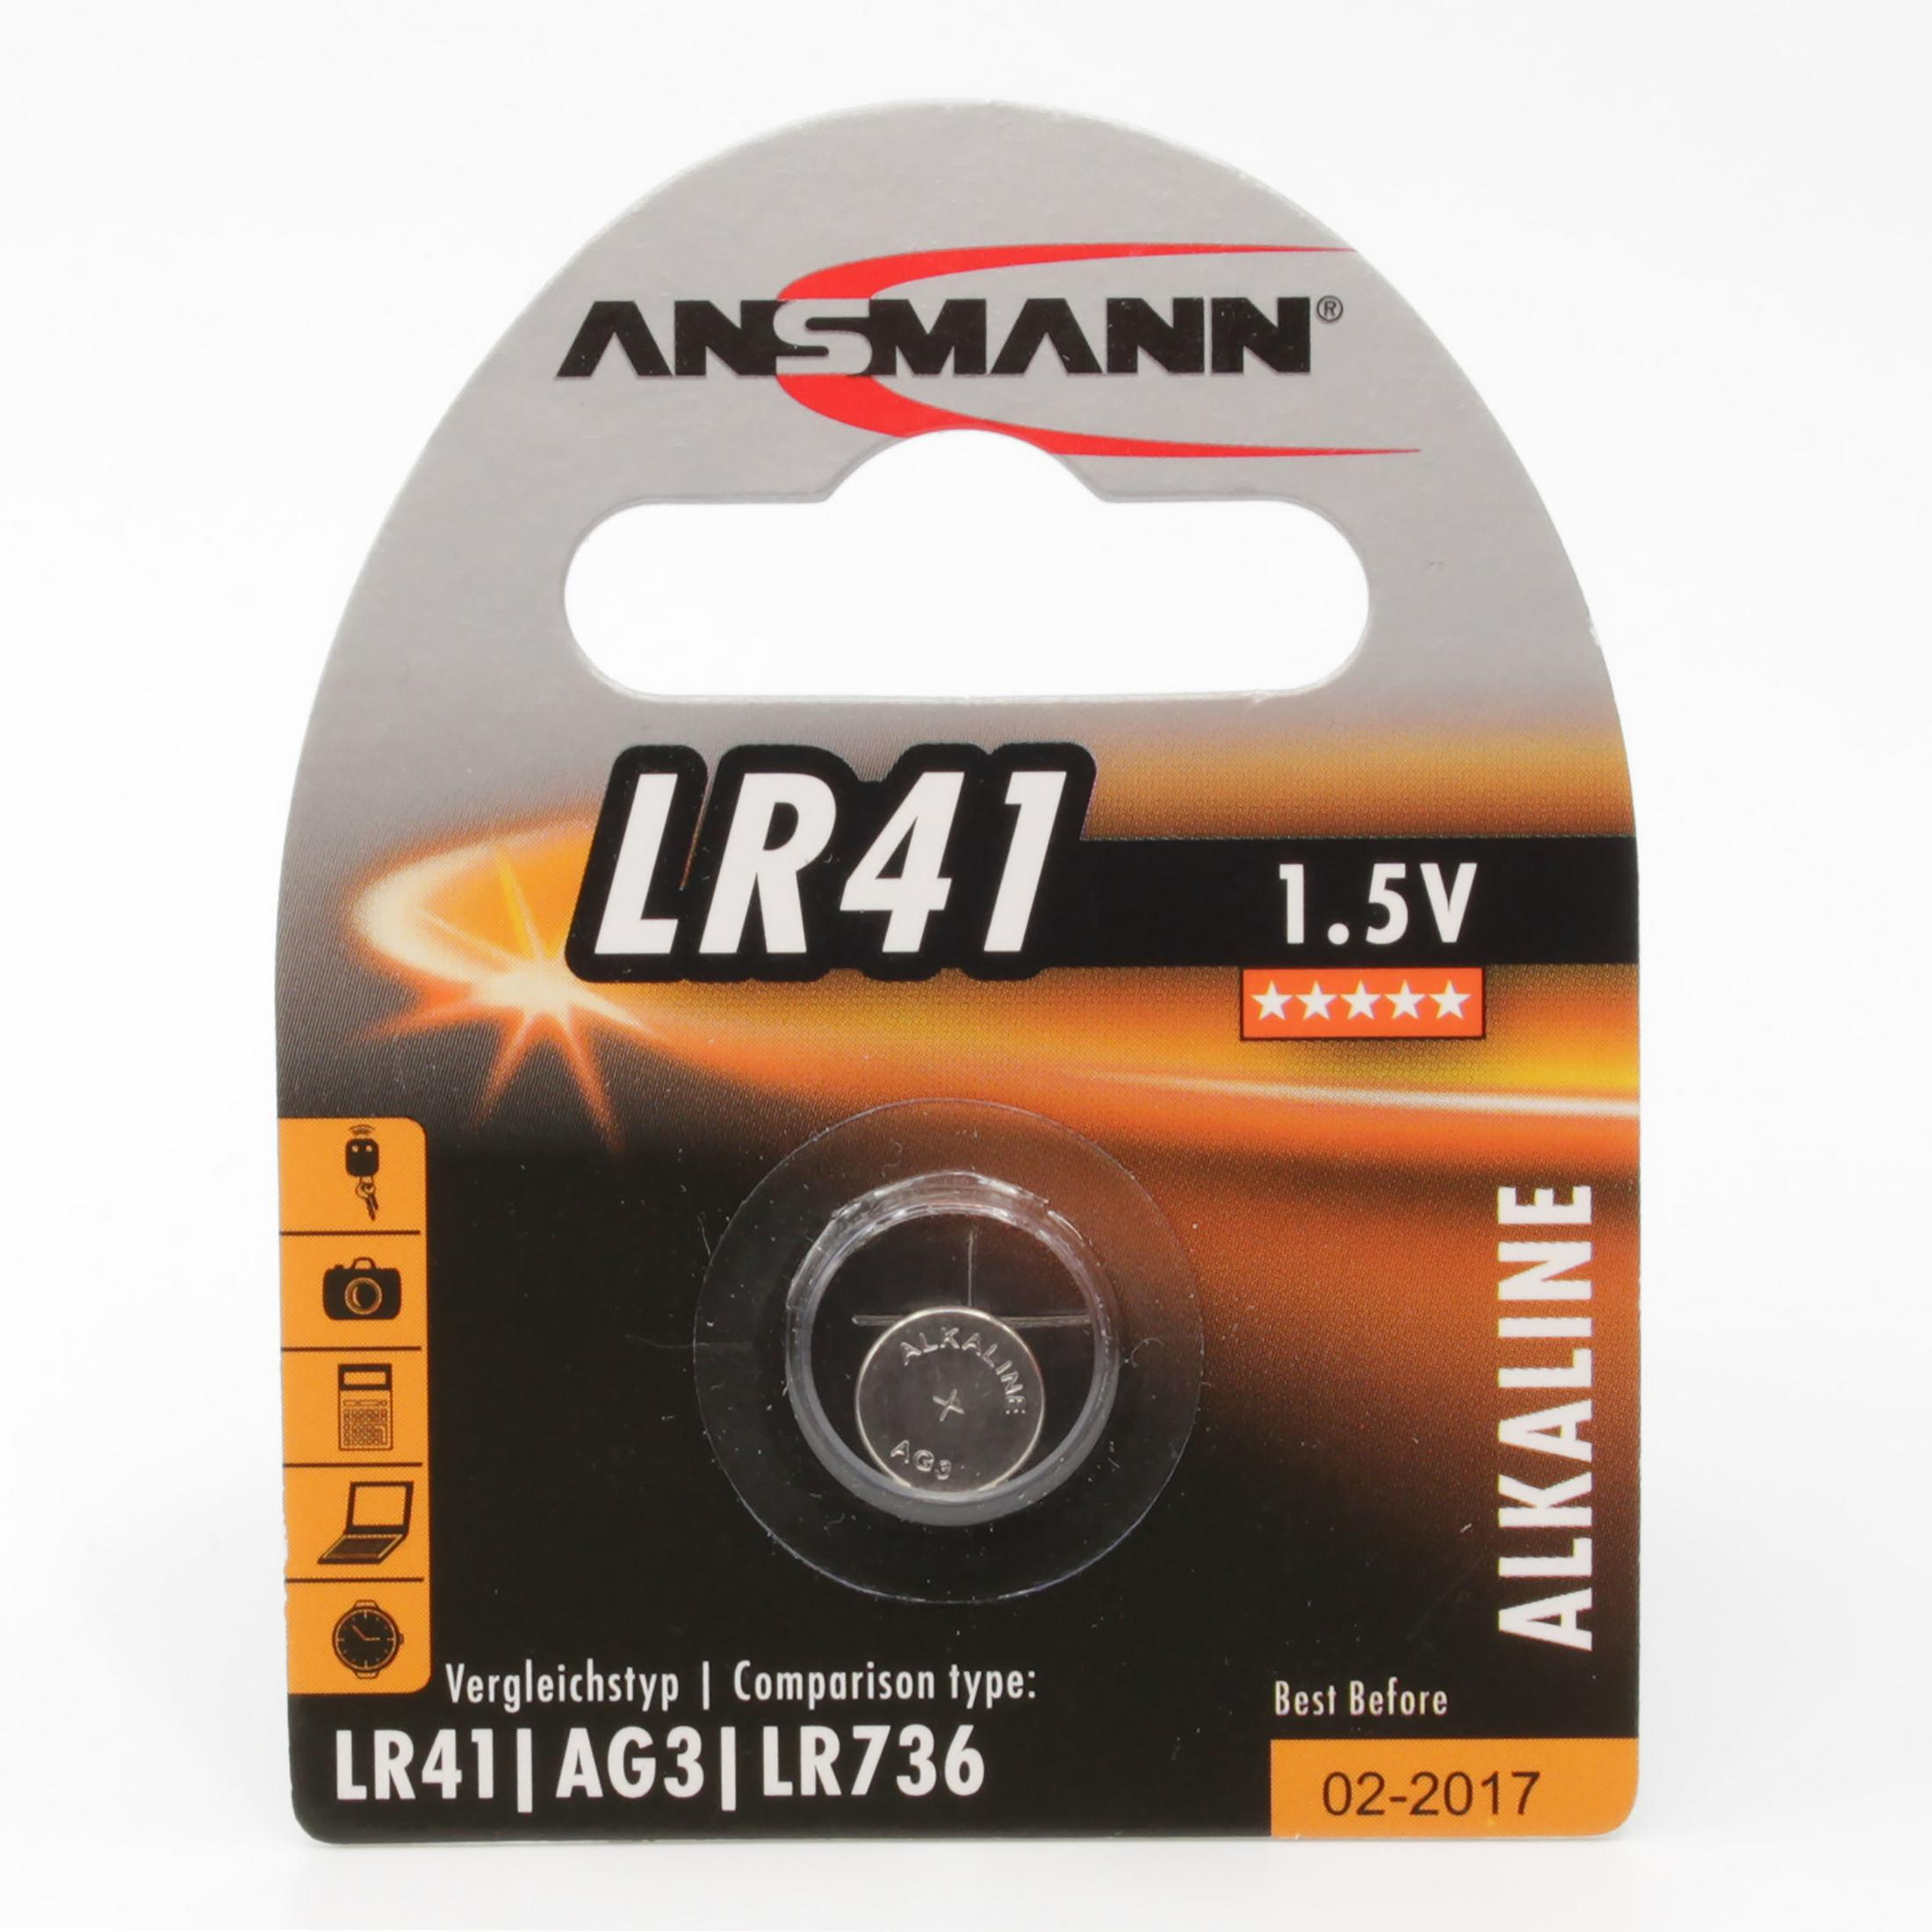 ANSMANN ANSMANN LR41 / Volt / 1,5V Knopfzellen Alkaline Knopfzelle Knopfzellen, 1.5 Alkaline, 5015332 Licht 1 Energie Strom Stück